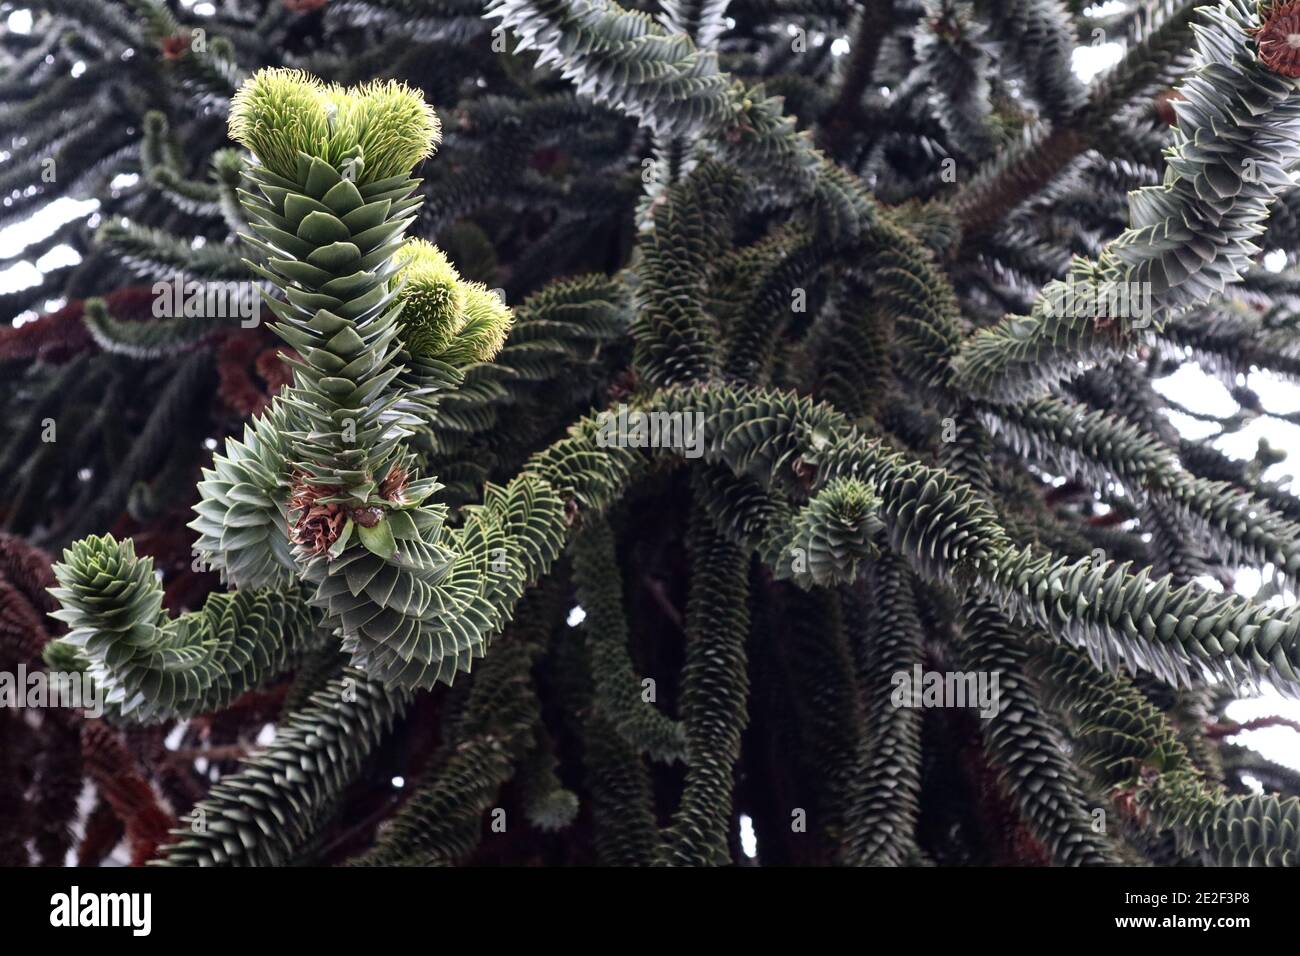 Araucaria araucana Monkey puzzle tree with male cones,  January, England, UK Stock Photo